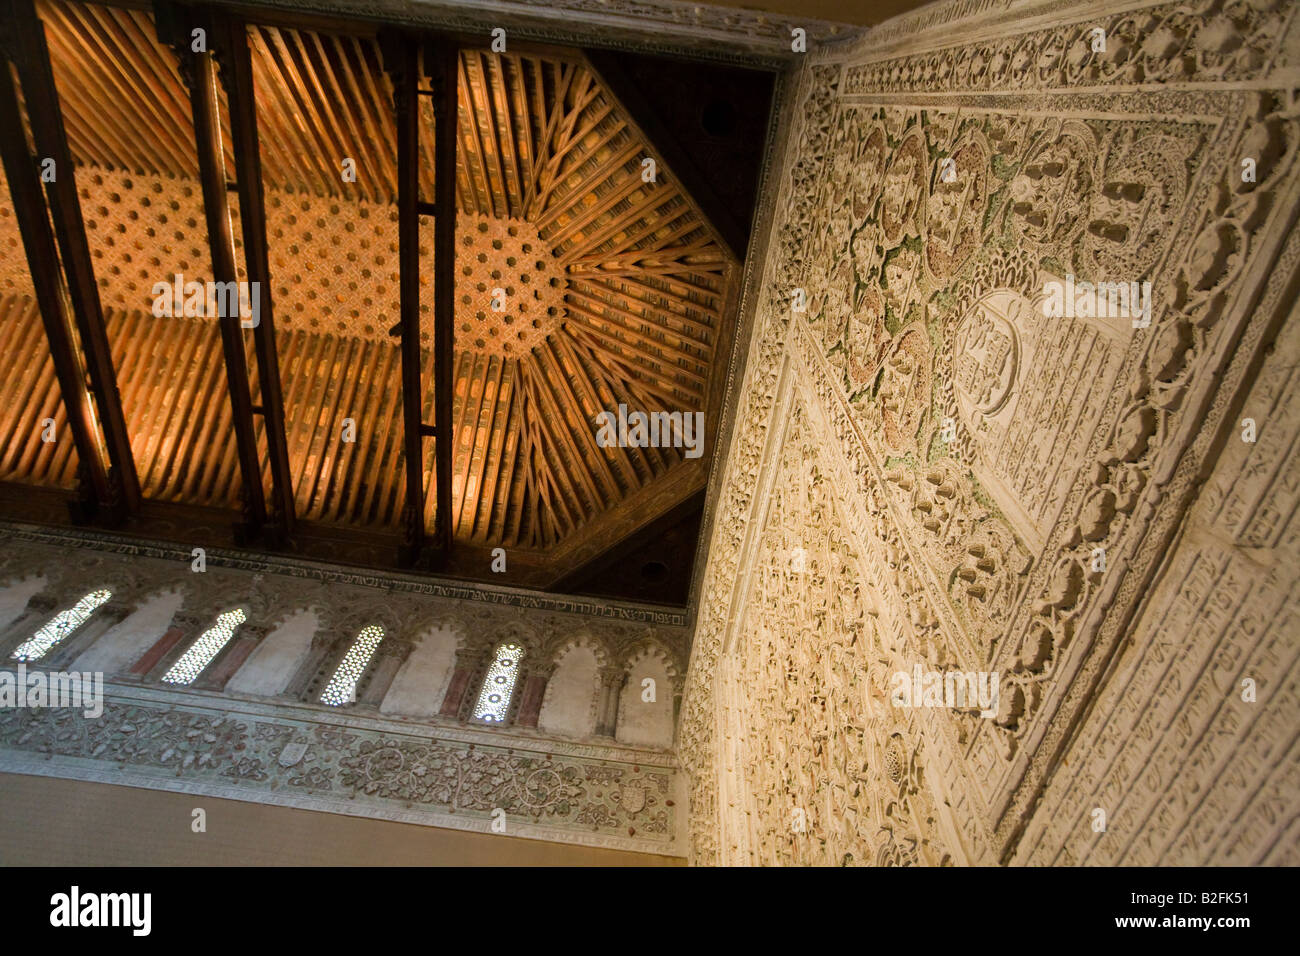 Spanien Toledo Interieur der Sinagoga del Transito und Museo Sefardi Synagoge im Mudejar-Stil maurischer Architektur 14. Jh. Stockfoto